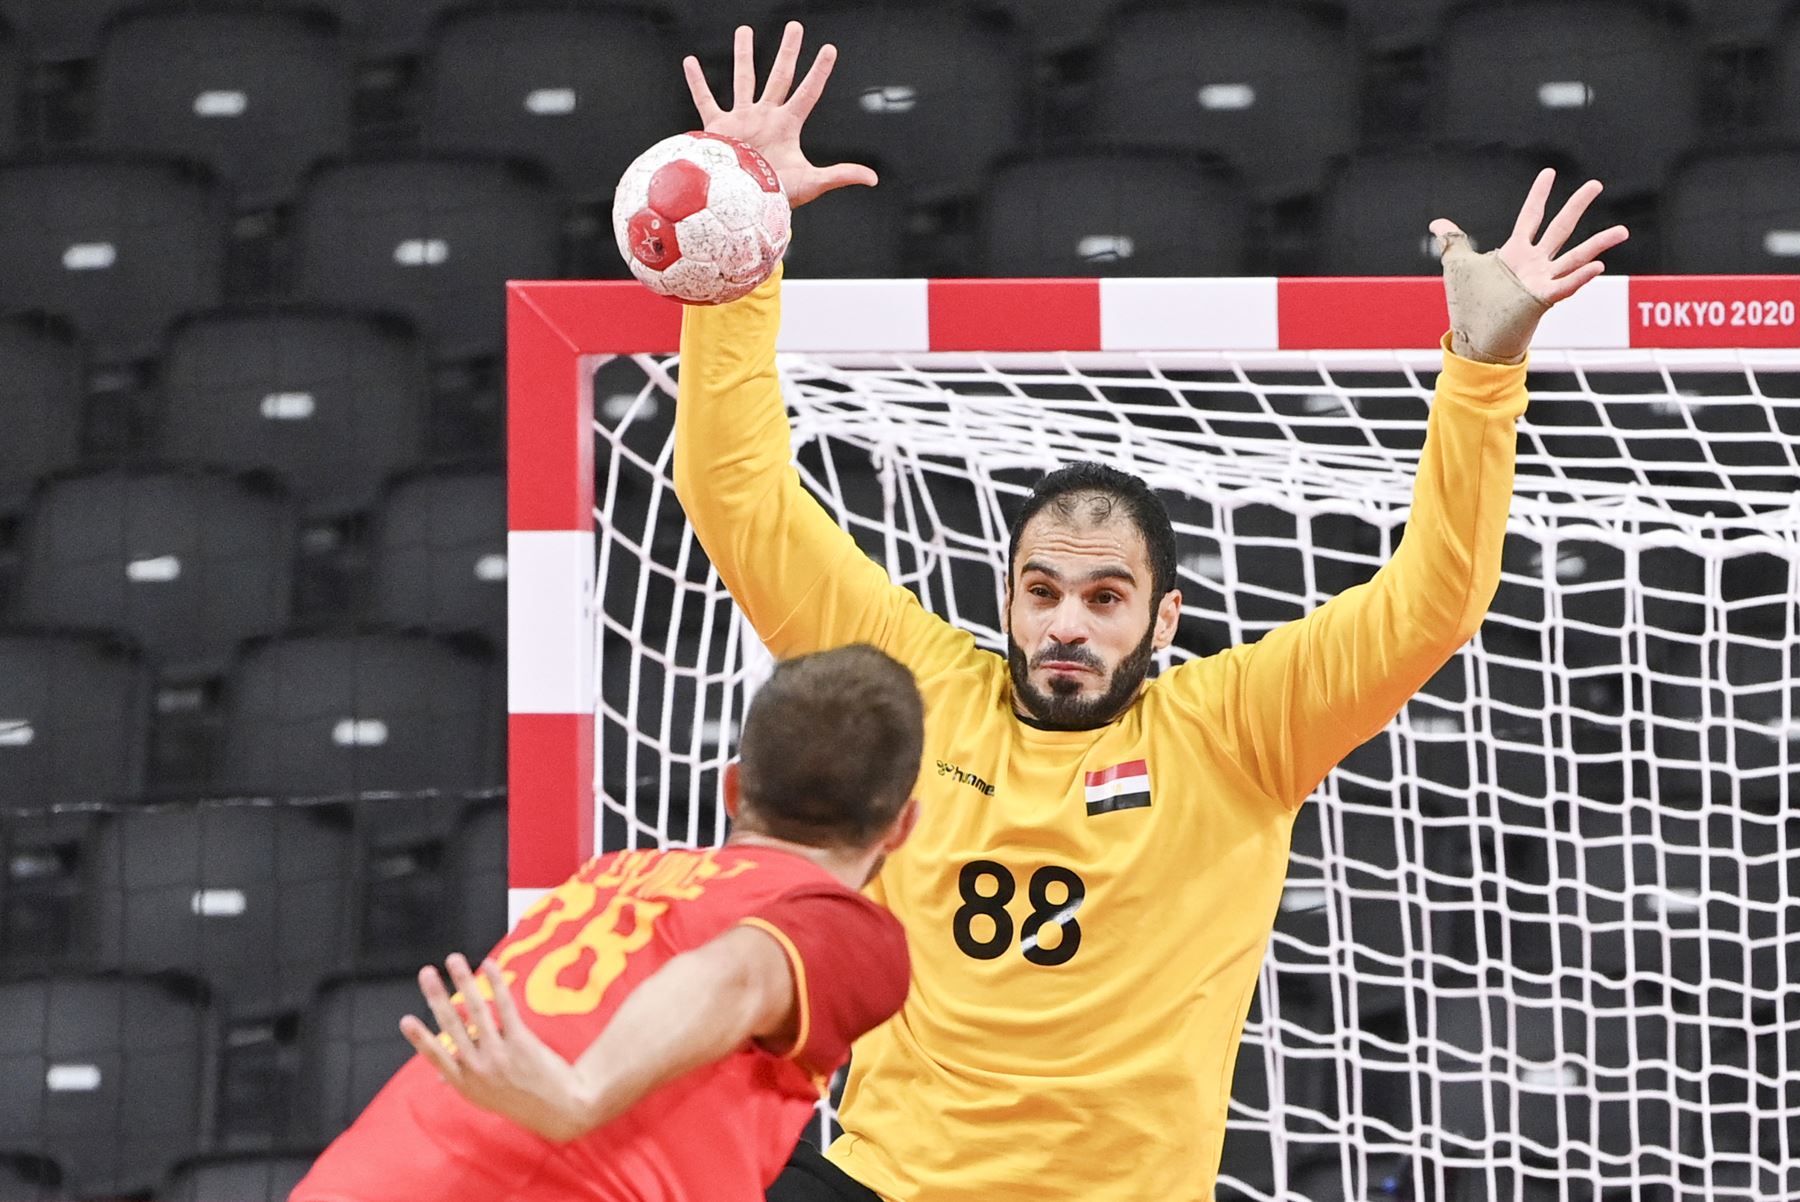 El portero egipcio Karim Hendawy intenta detener un disparo durante el partido de balonmano por la medalla de bronce masculina entre Egipto y España de los Juegos Olímpicos de Tokio 2020. Foto: AFP